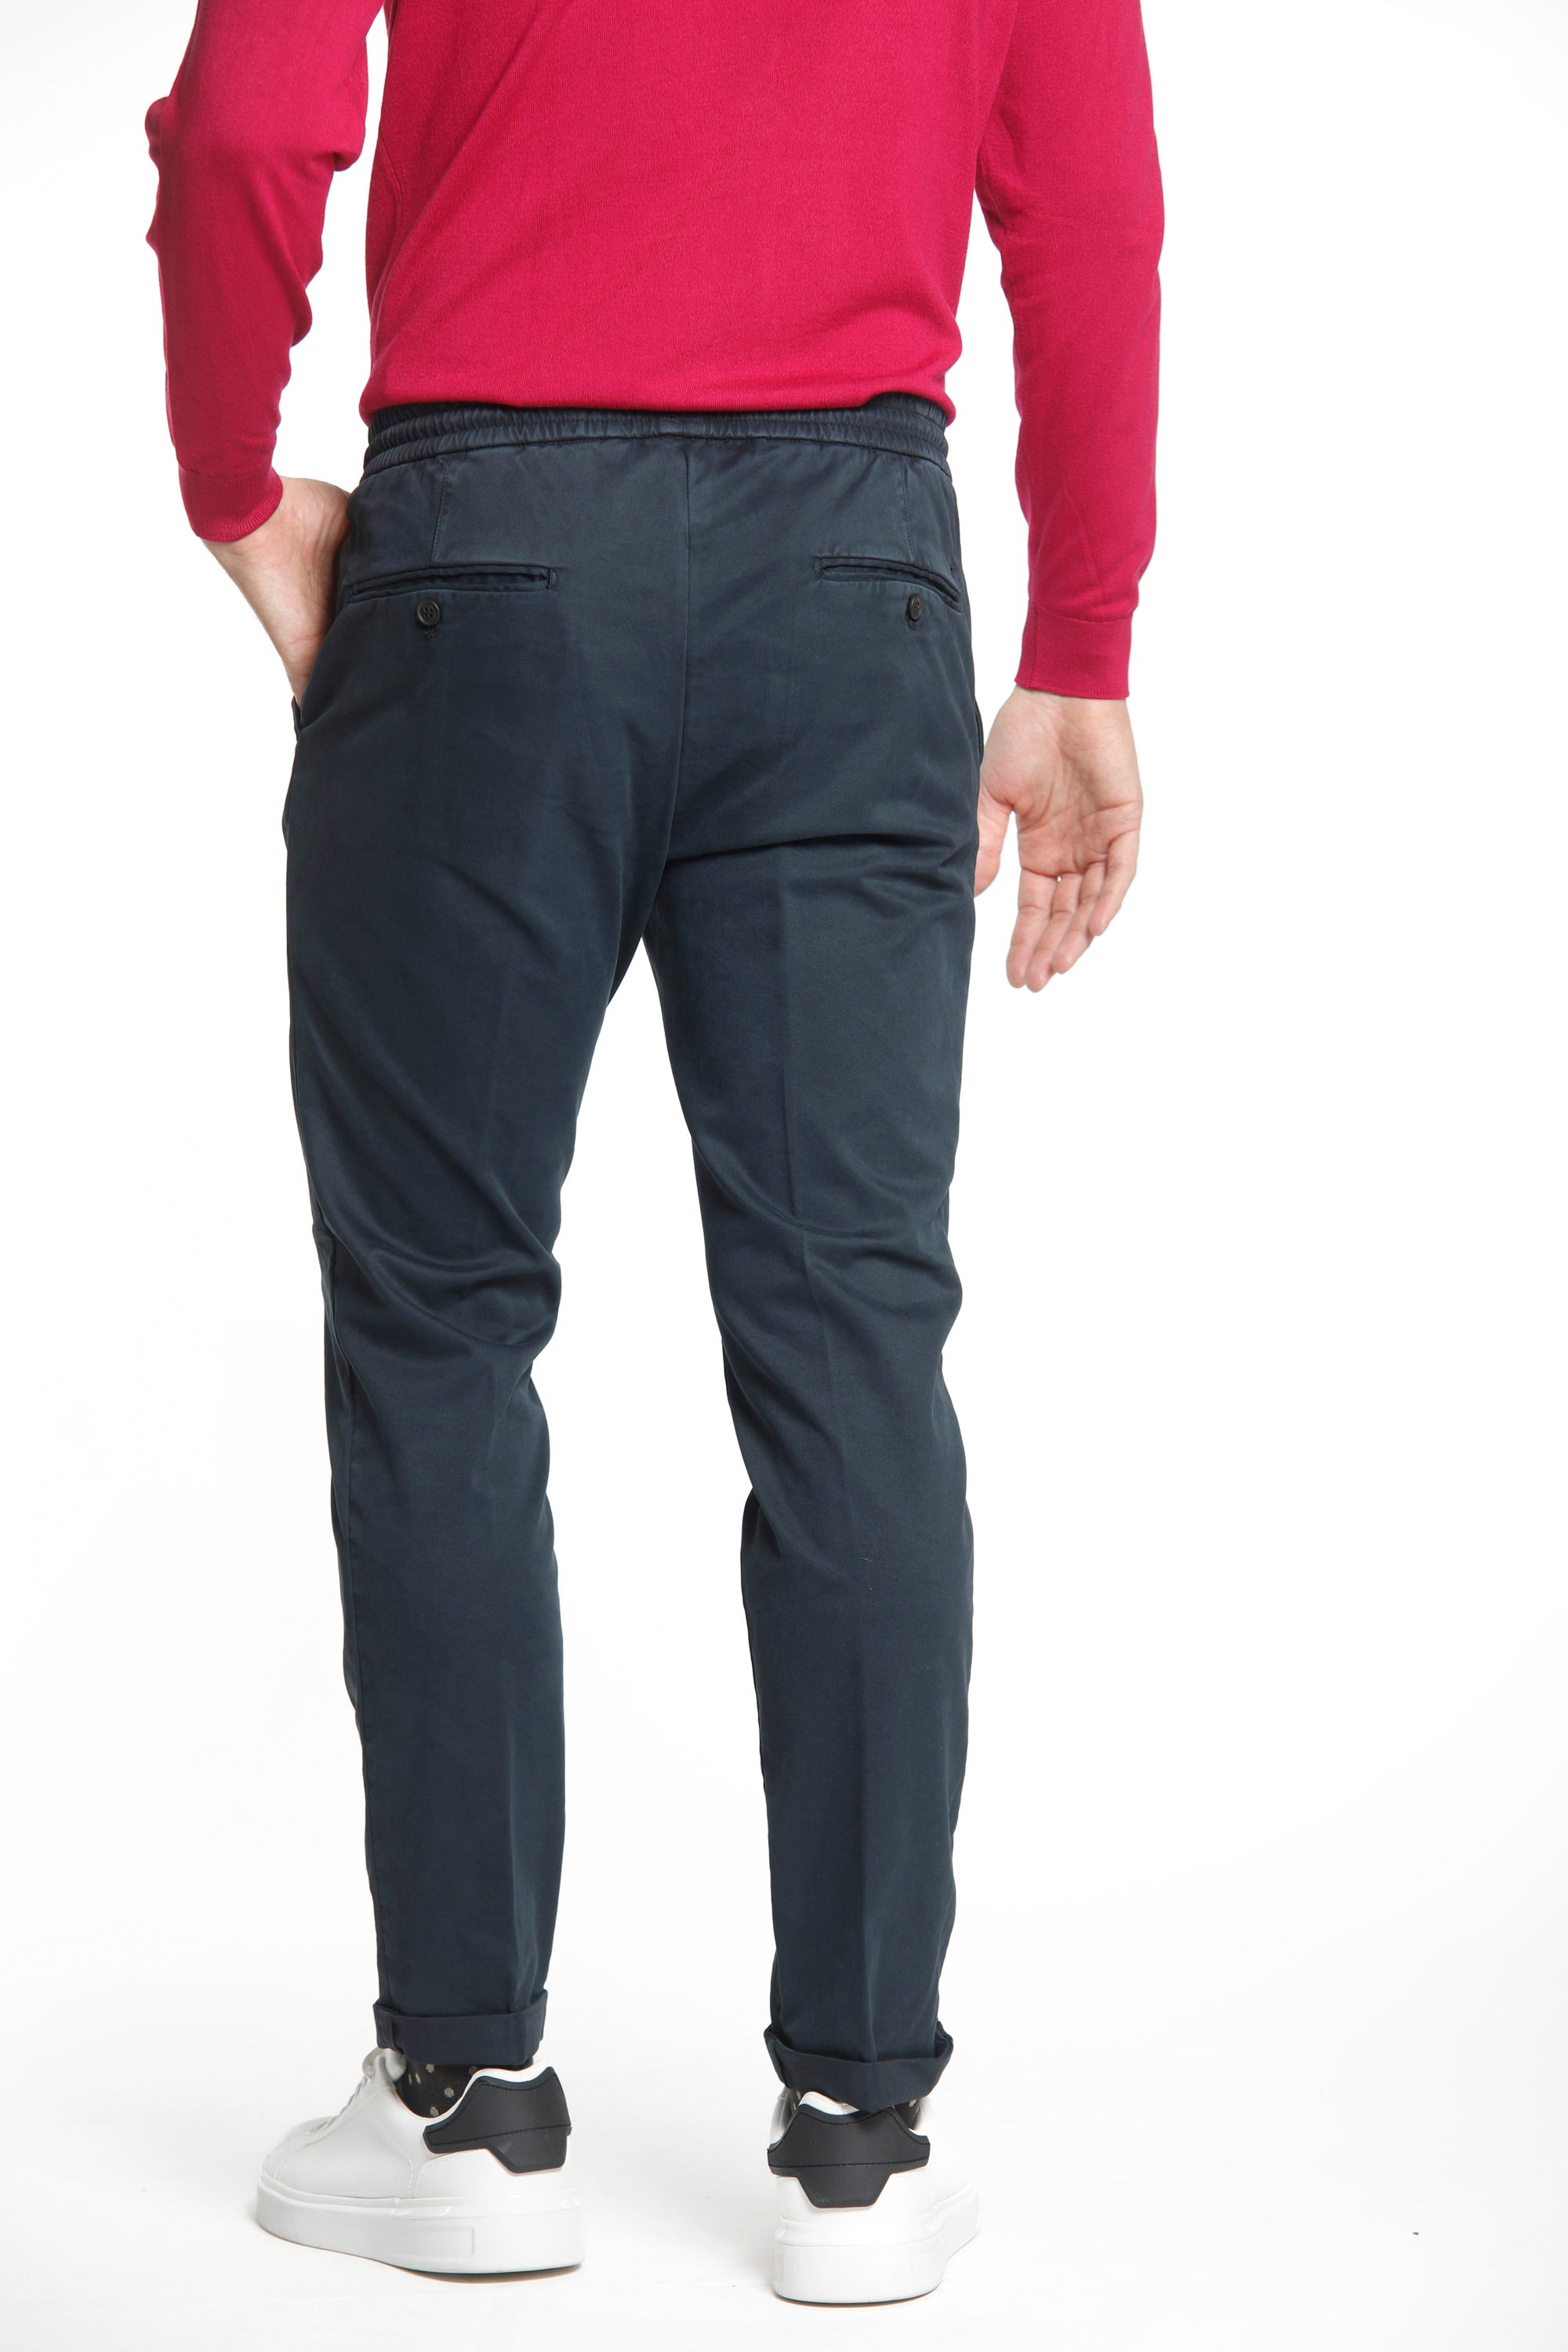 New York Sack pantalon chino jogger homme en coton modal stretch coupe régulière